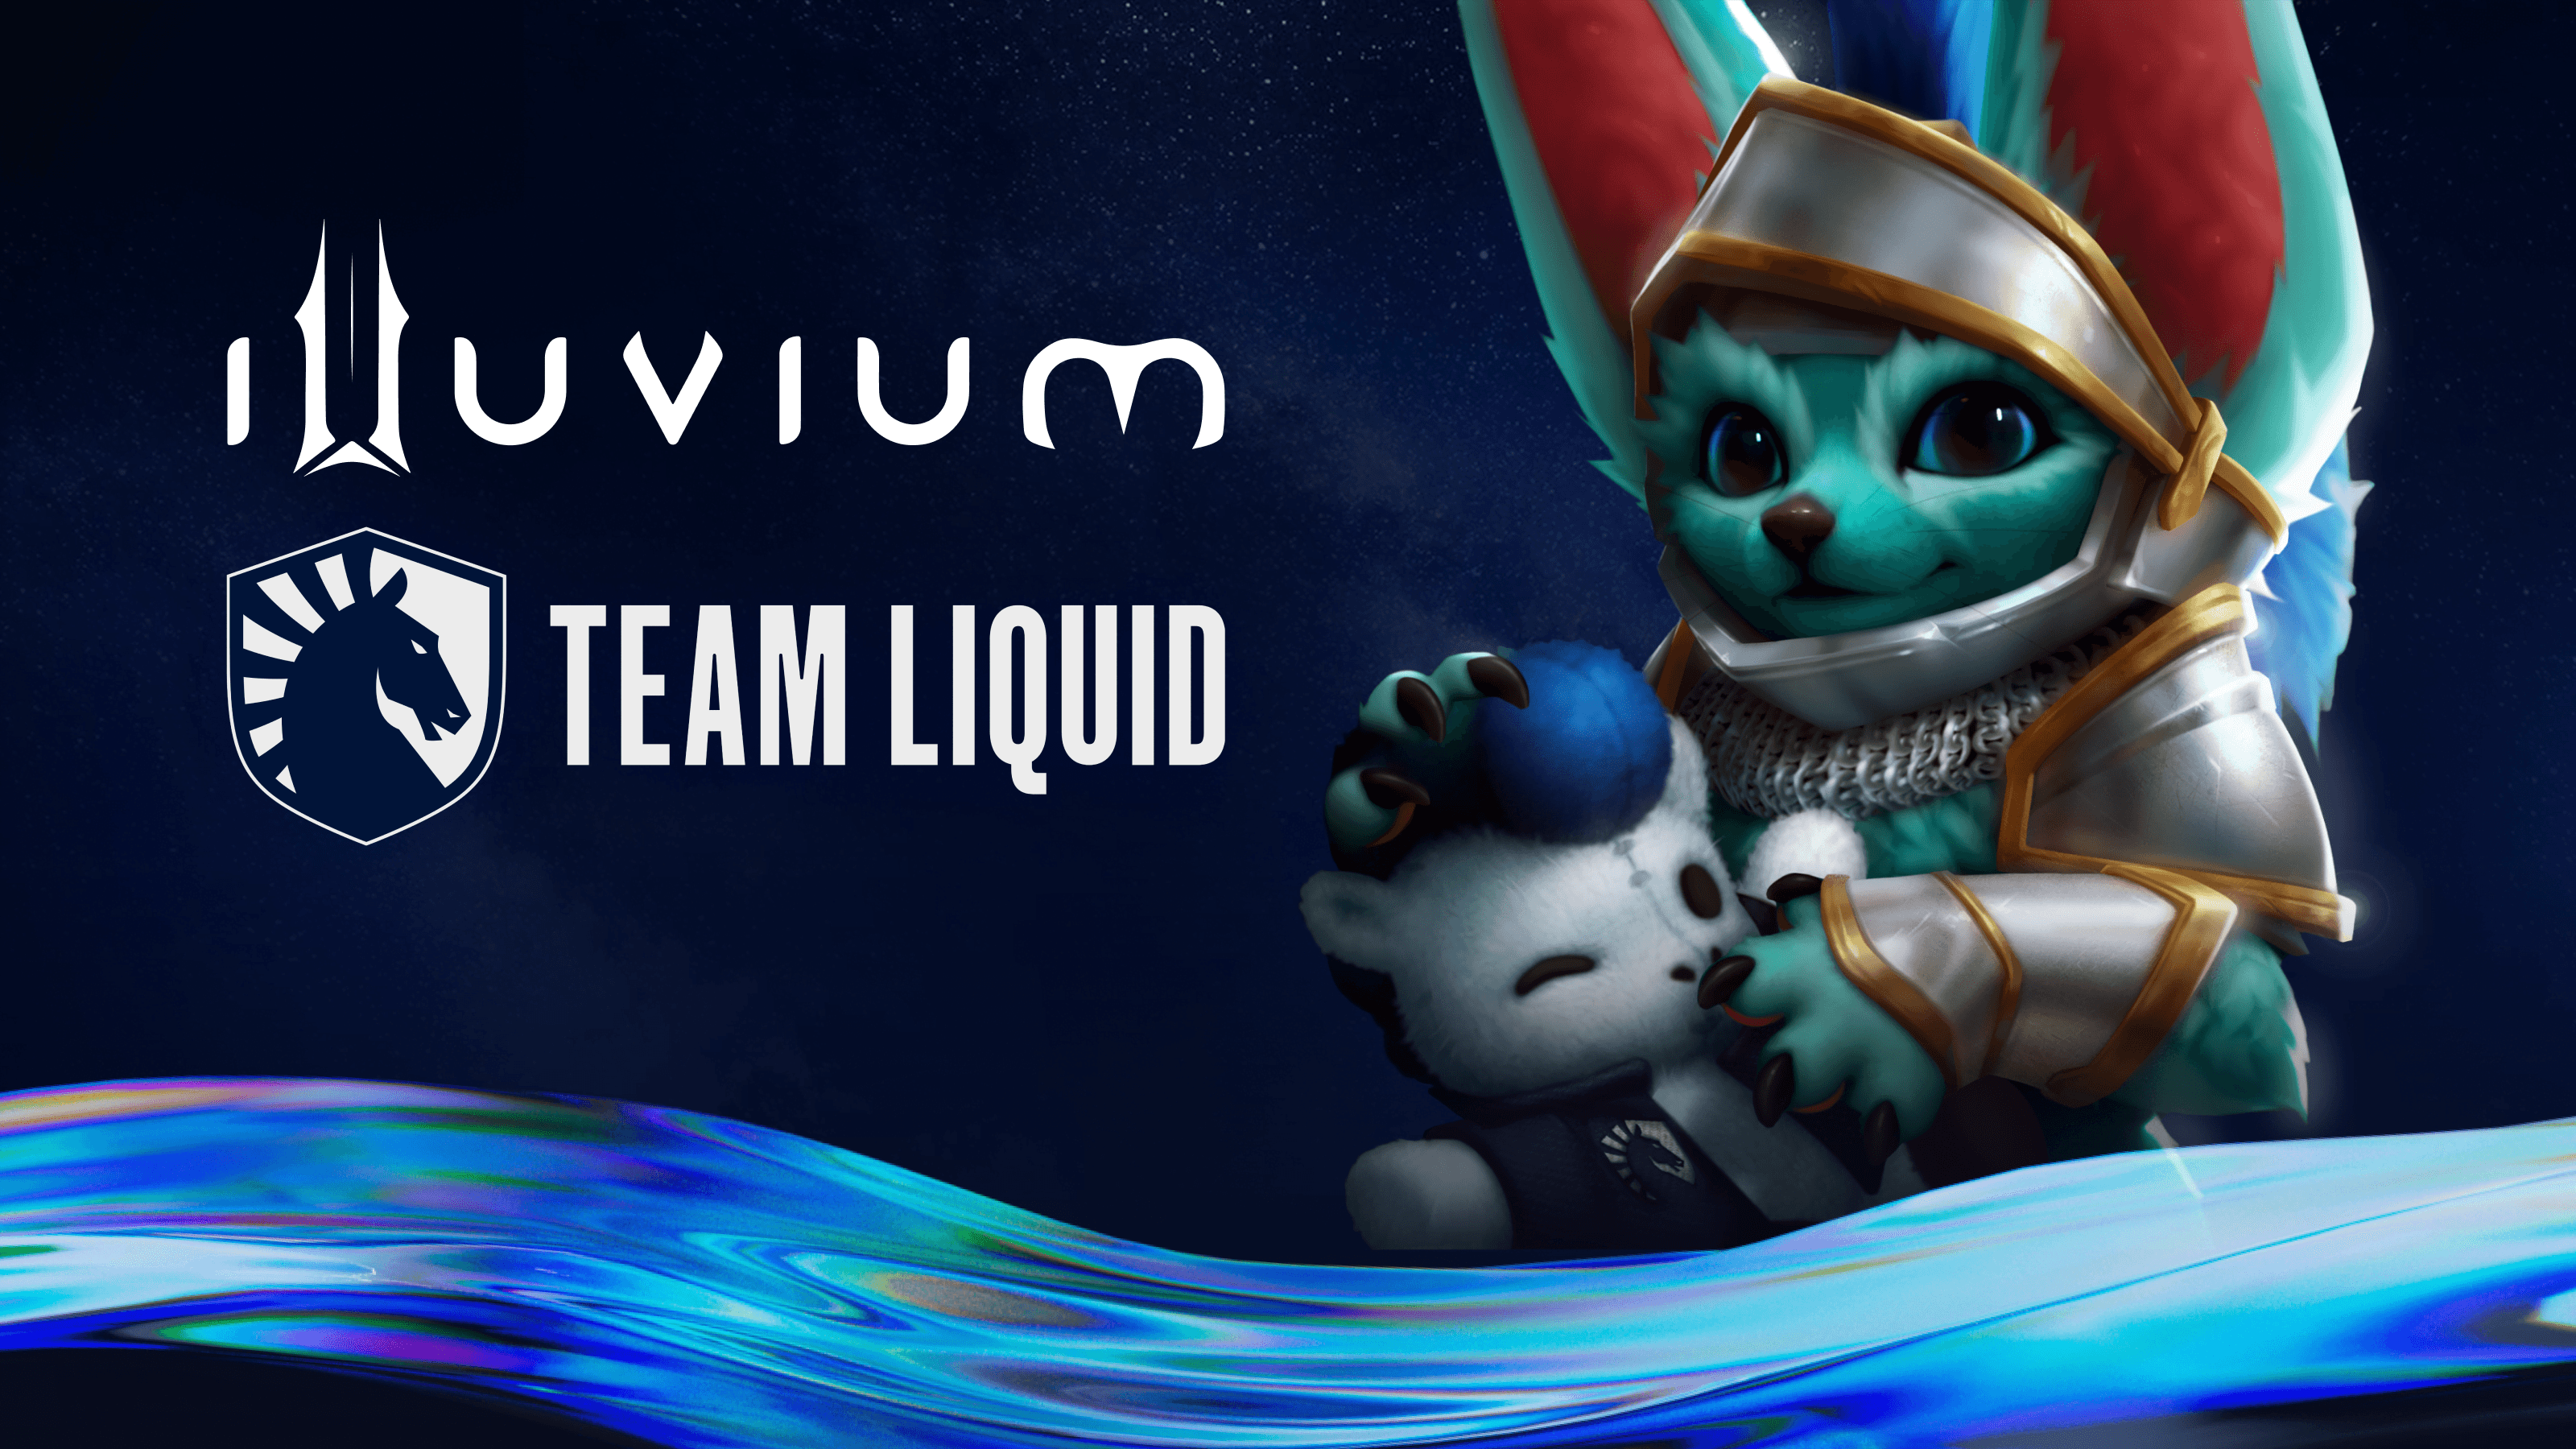 Team Liquid e Illuvium están planeando un torneo de deportes electrónicos NFT